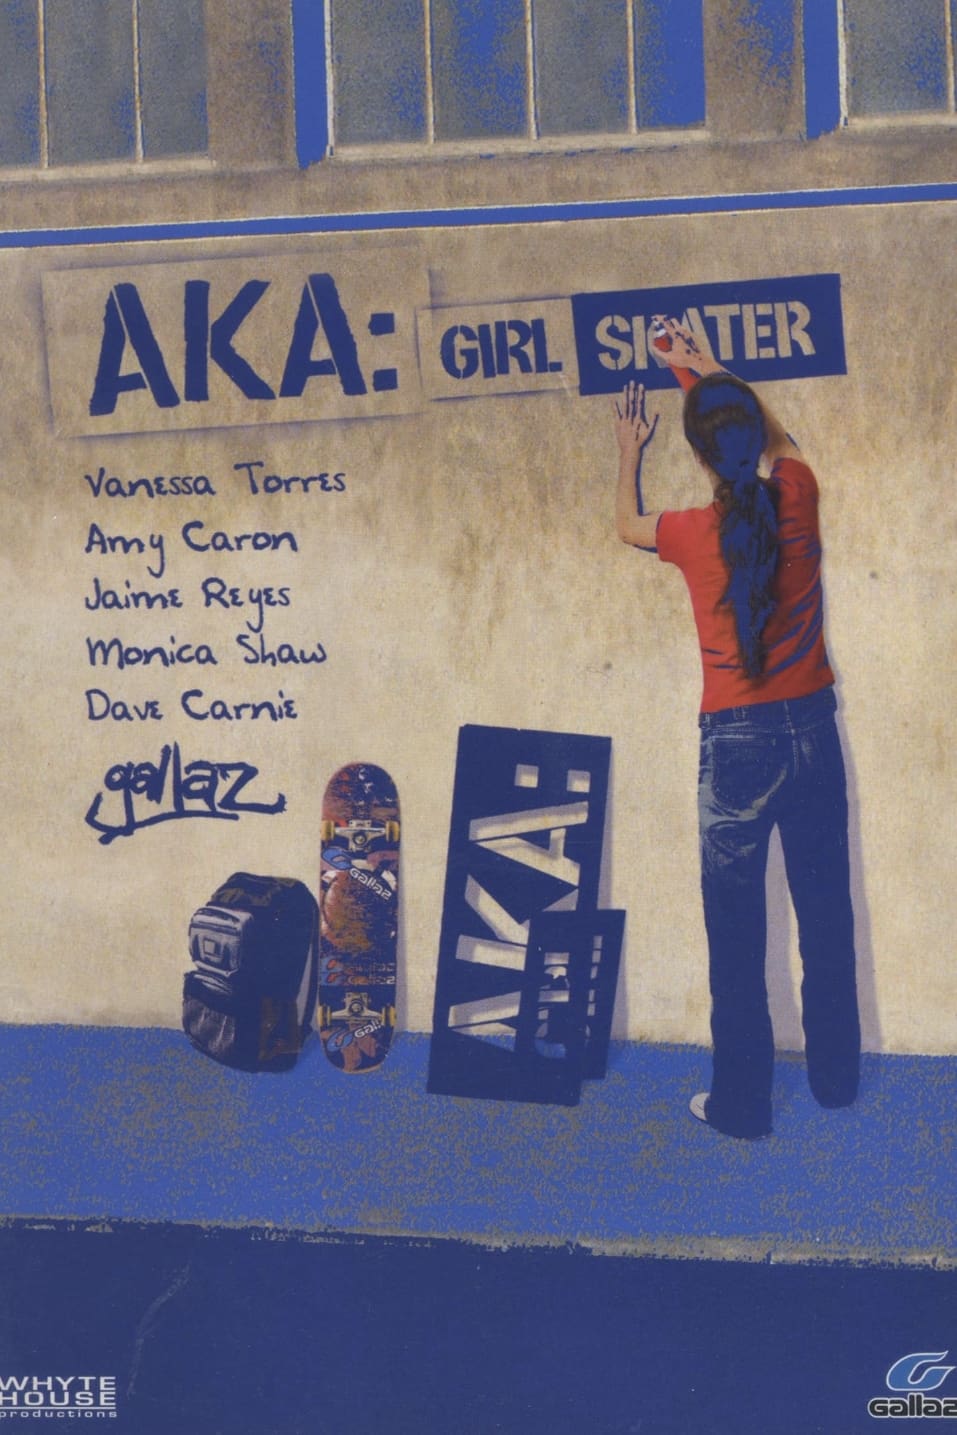 AKA: Girl Skater